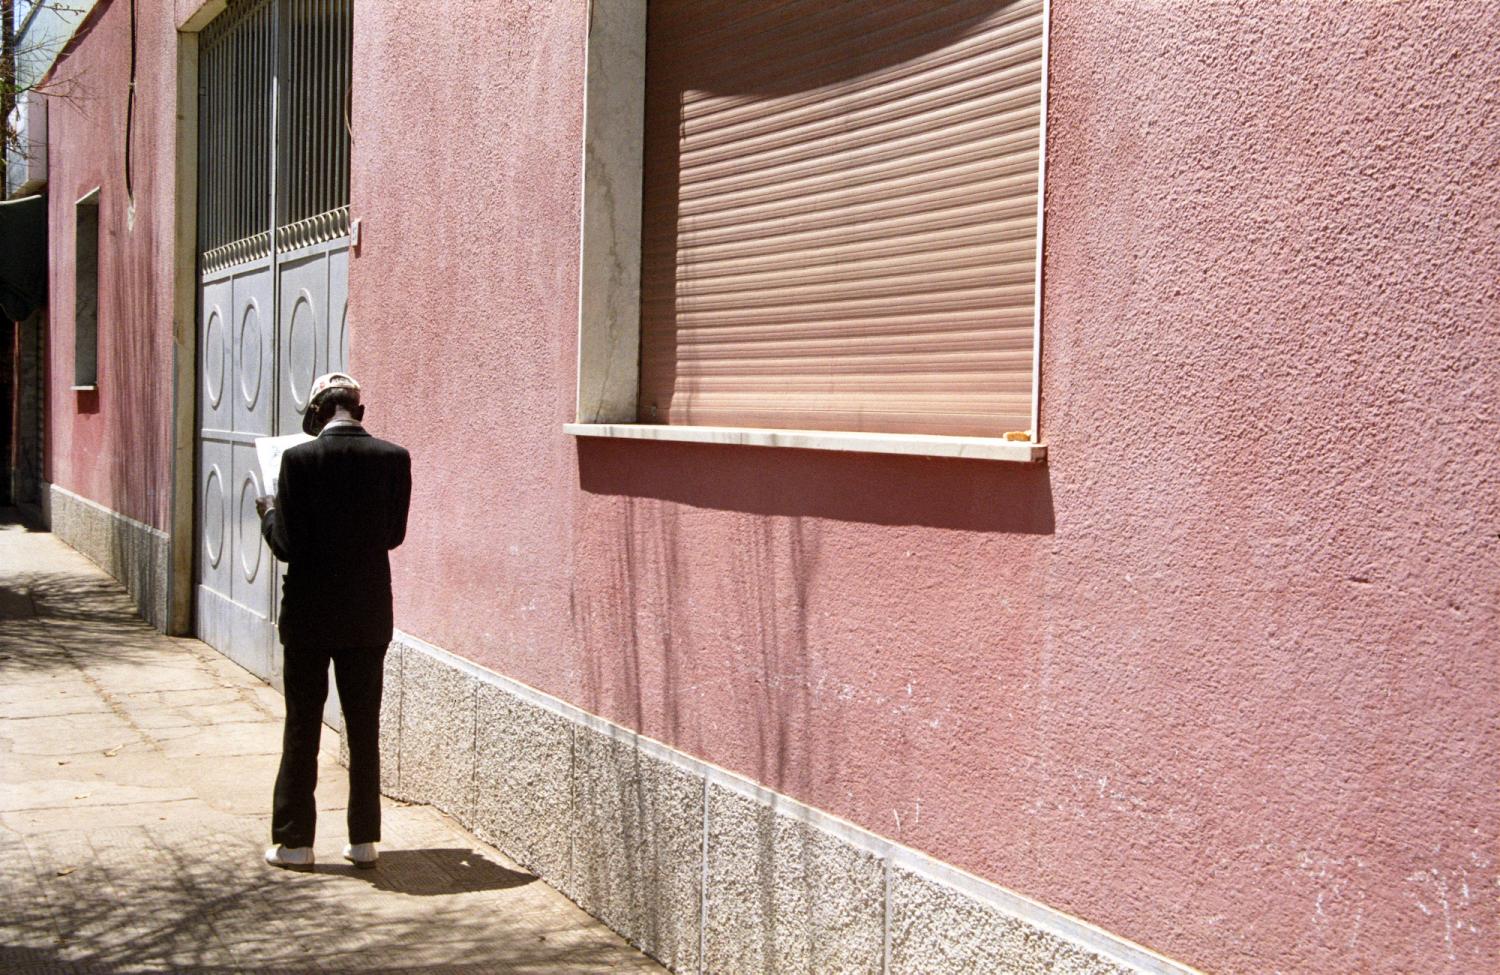 Un homme endimanché lit le journal en longeant un immeuble rose. Asmara, Erythrée, mars 2005.